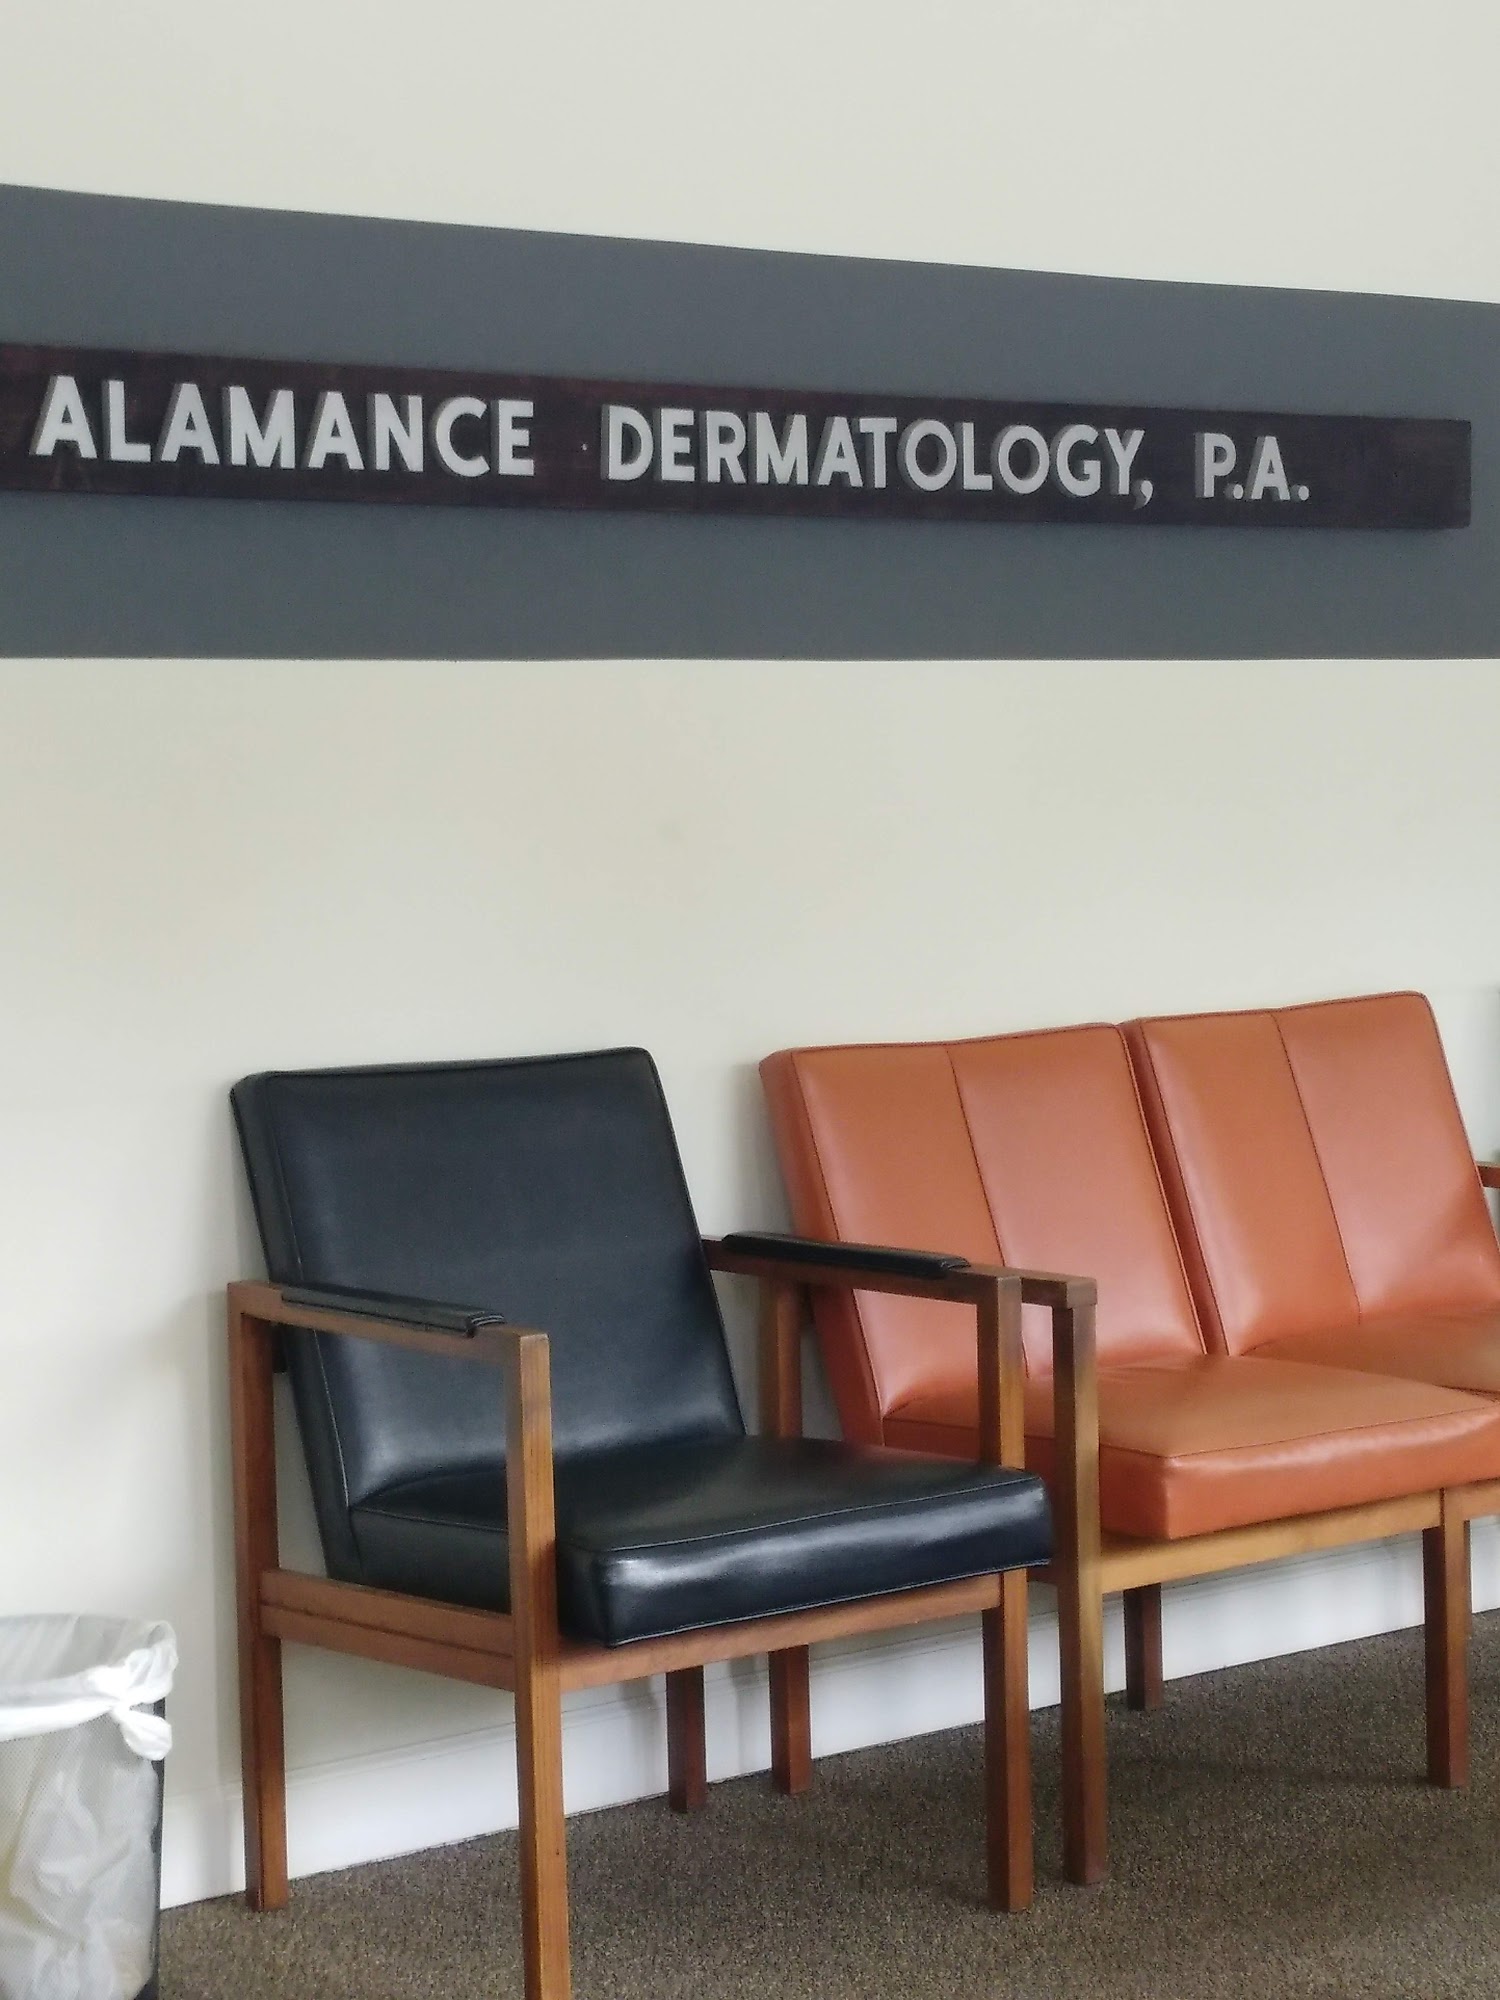 Alamance Dermatology PA